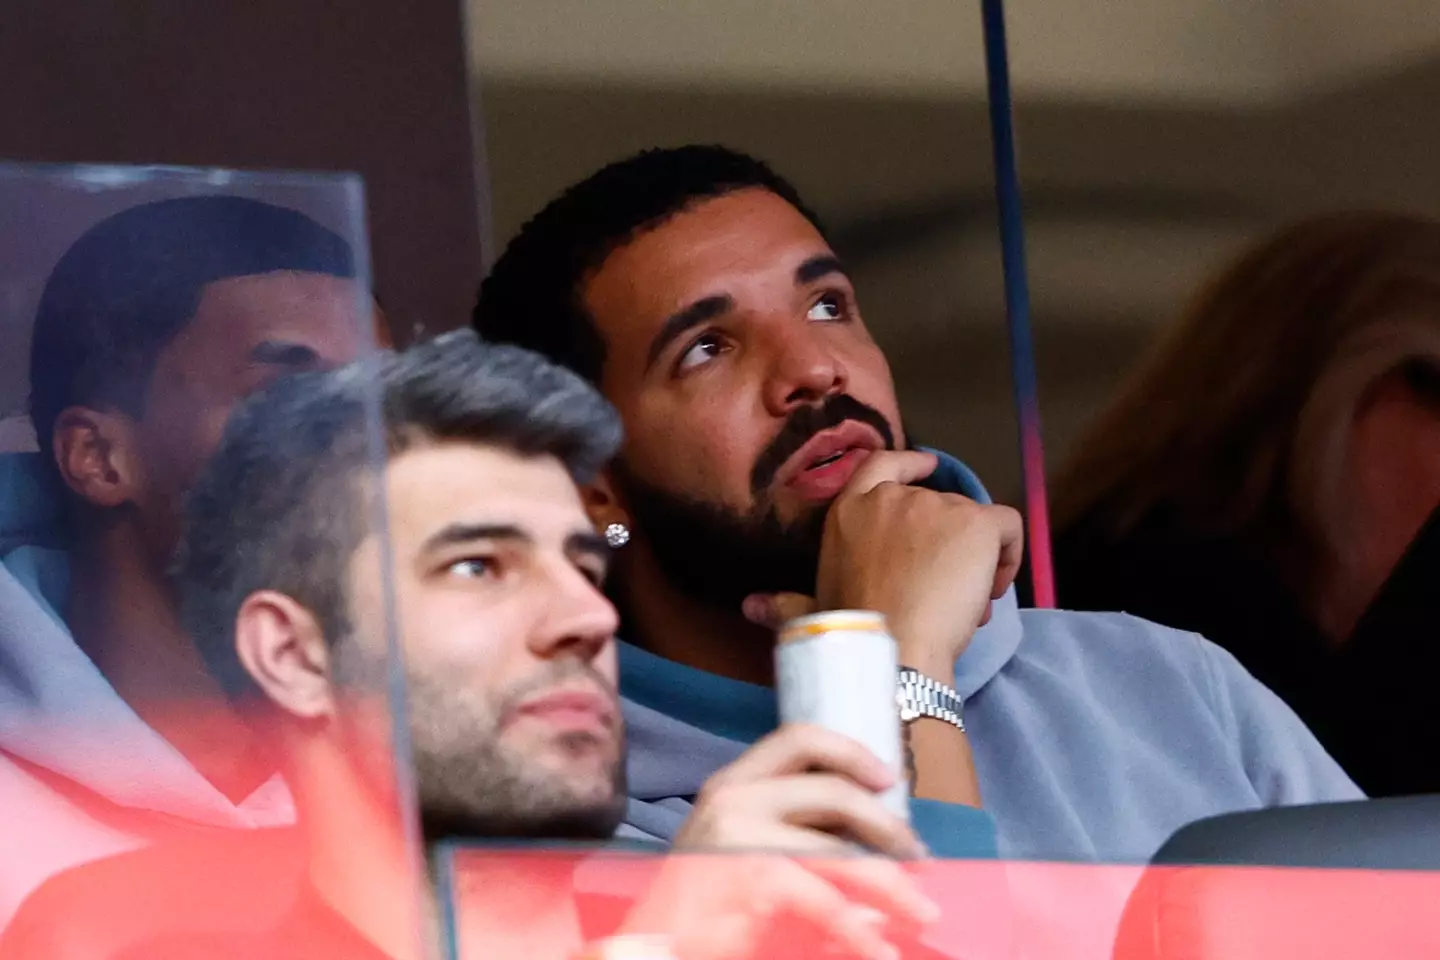 Drake at the Super Bowl.